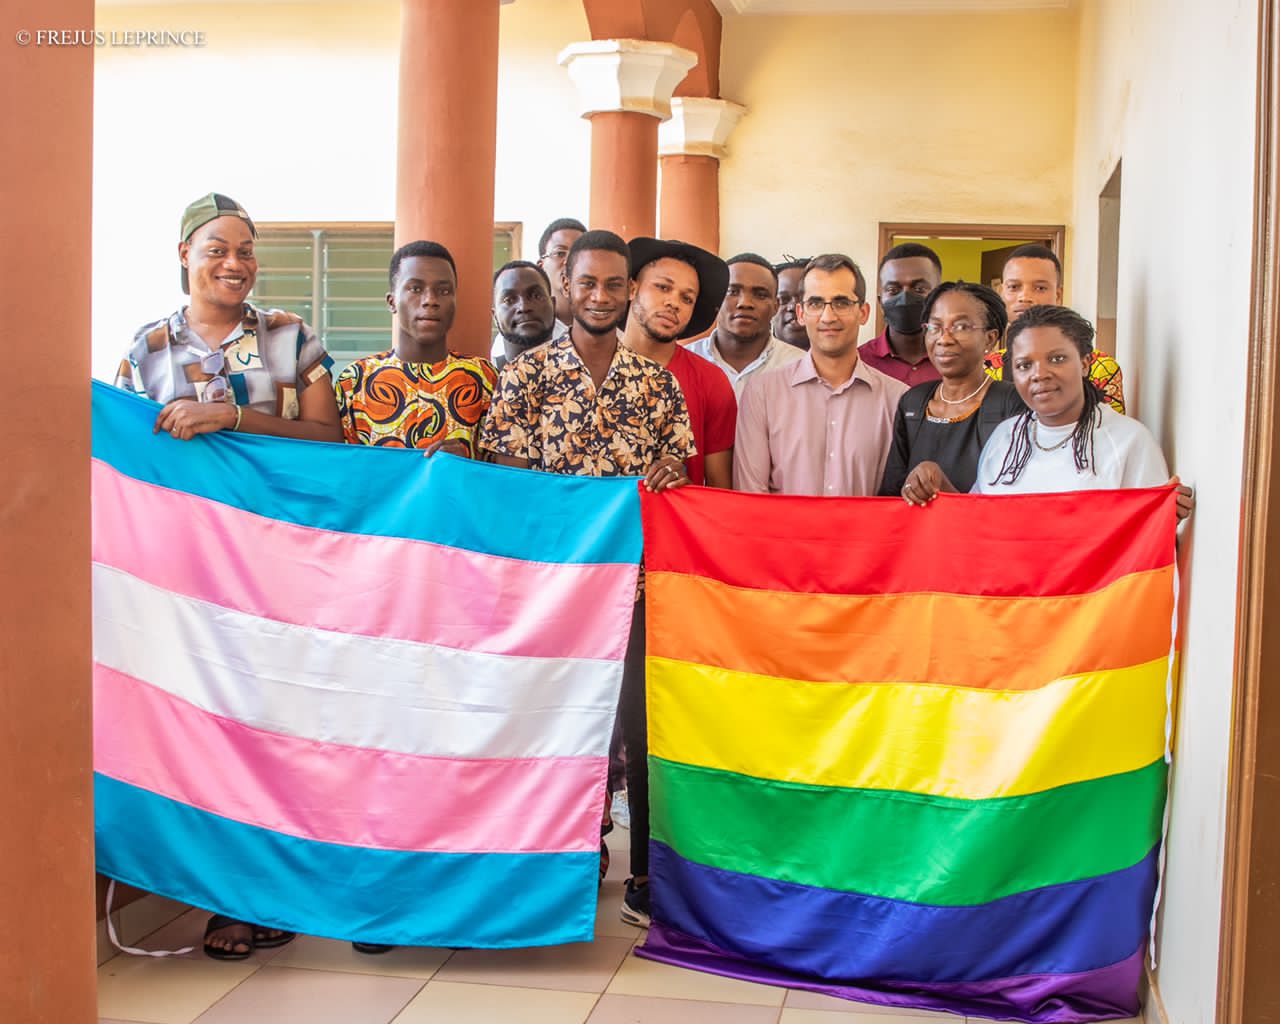 BESYP est le réseau national des Associations de personnes LGBTIQ avec 20 associations et un effectif  de 18952 membres répandus sur tout le territoire Béninois.